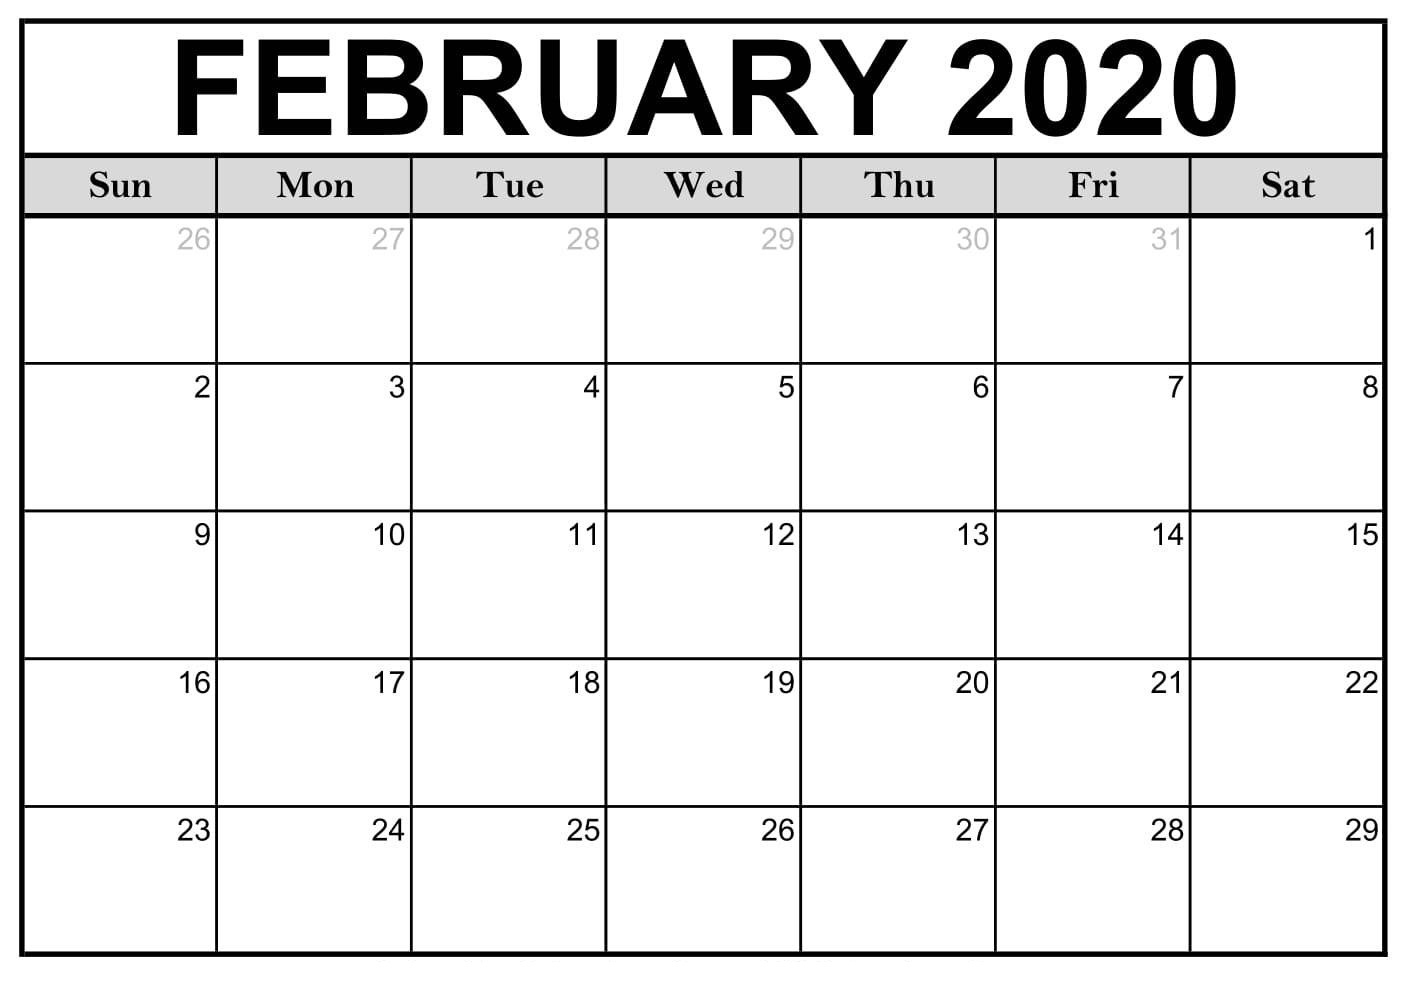 February 2020 Calendar Canada Bank Holidays - 2019 Calendars Impressive 2020 Calendar Canada Printable